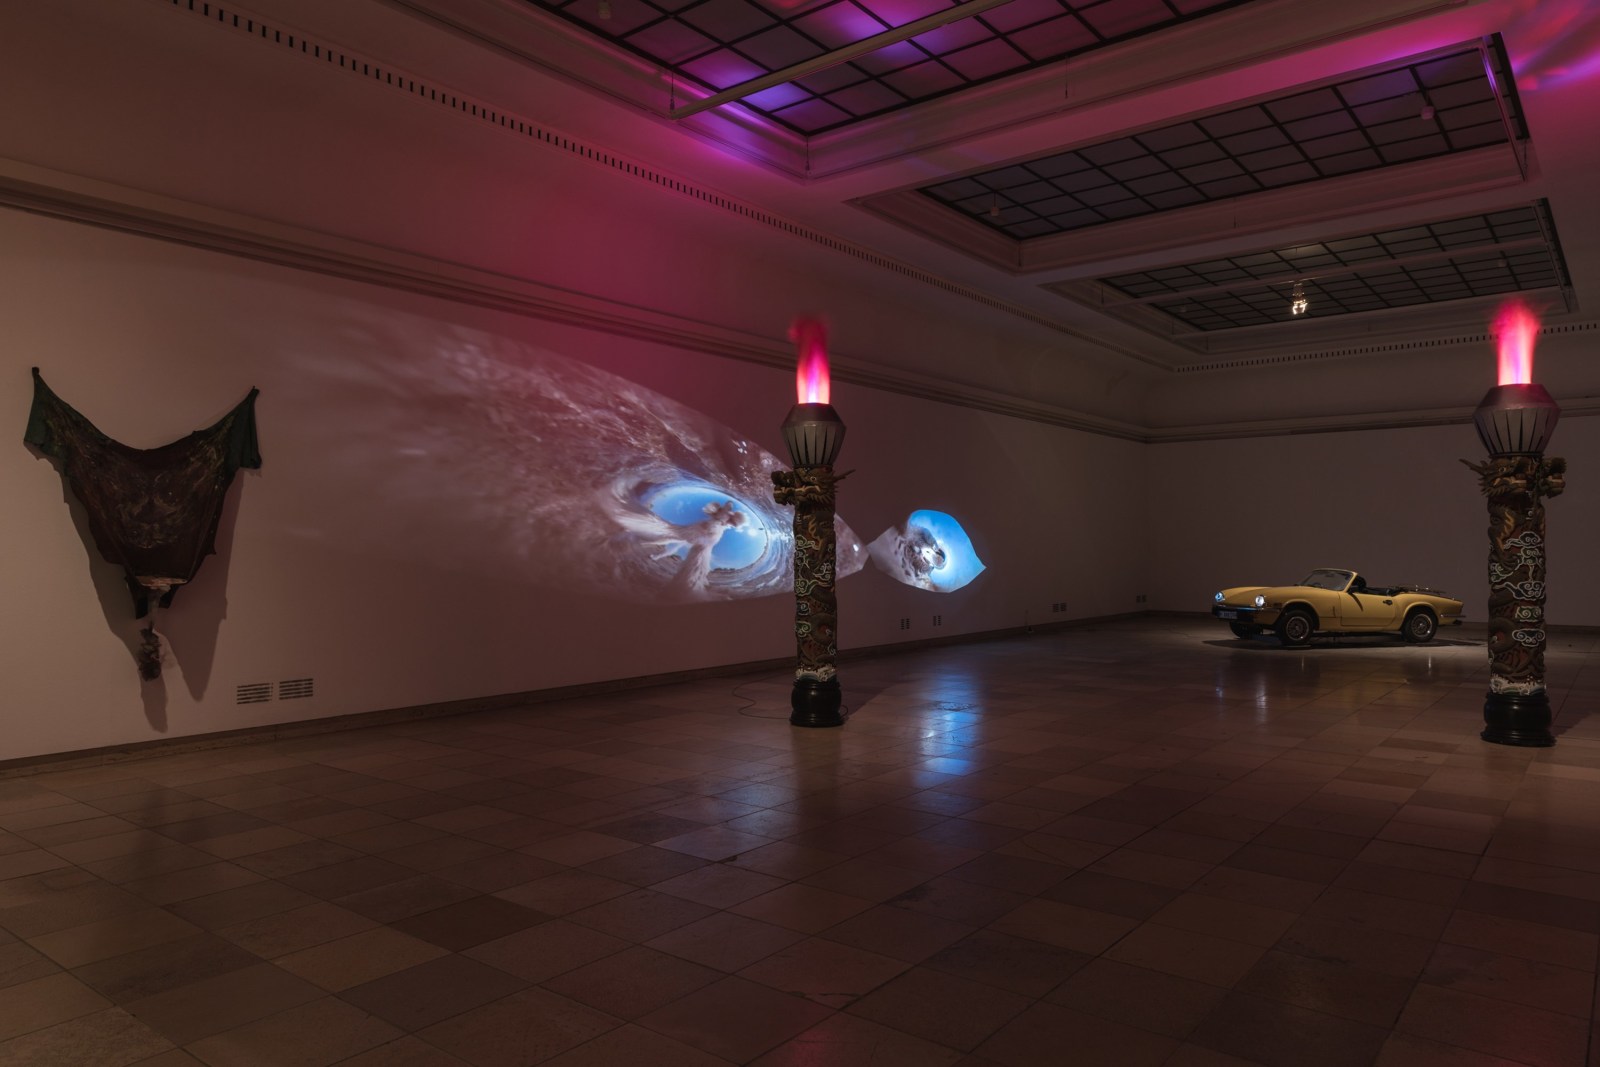 Installation view, A Woman&rsquo;s Sportscar, Haus der Kunst, Munich, 2019